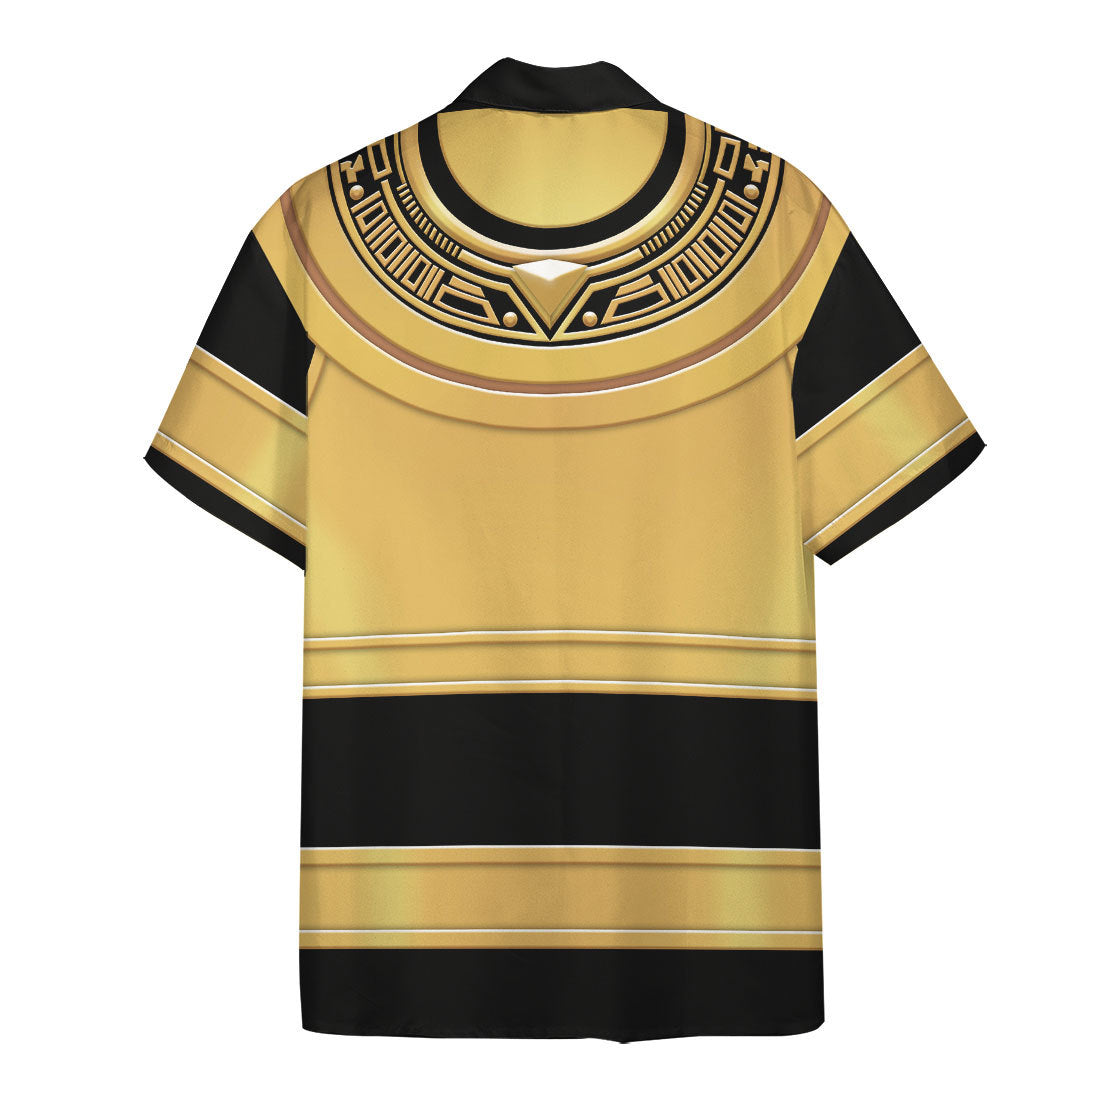 Power Ranger Zeo Gold Hawaii Shirt 1